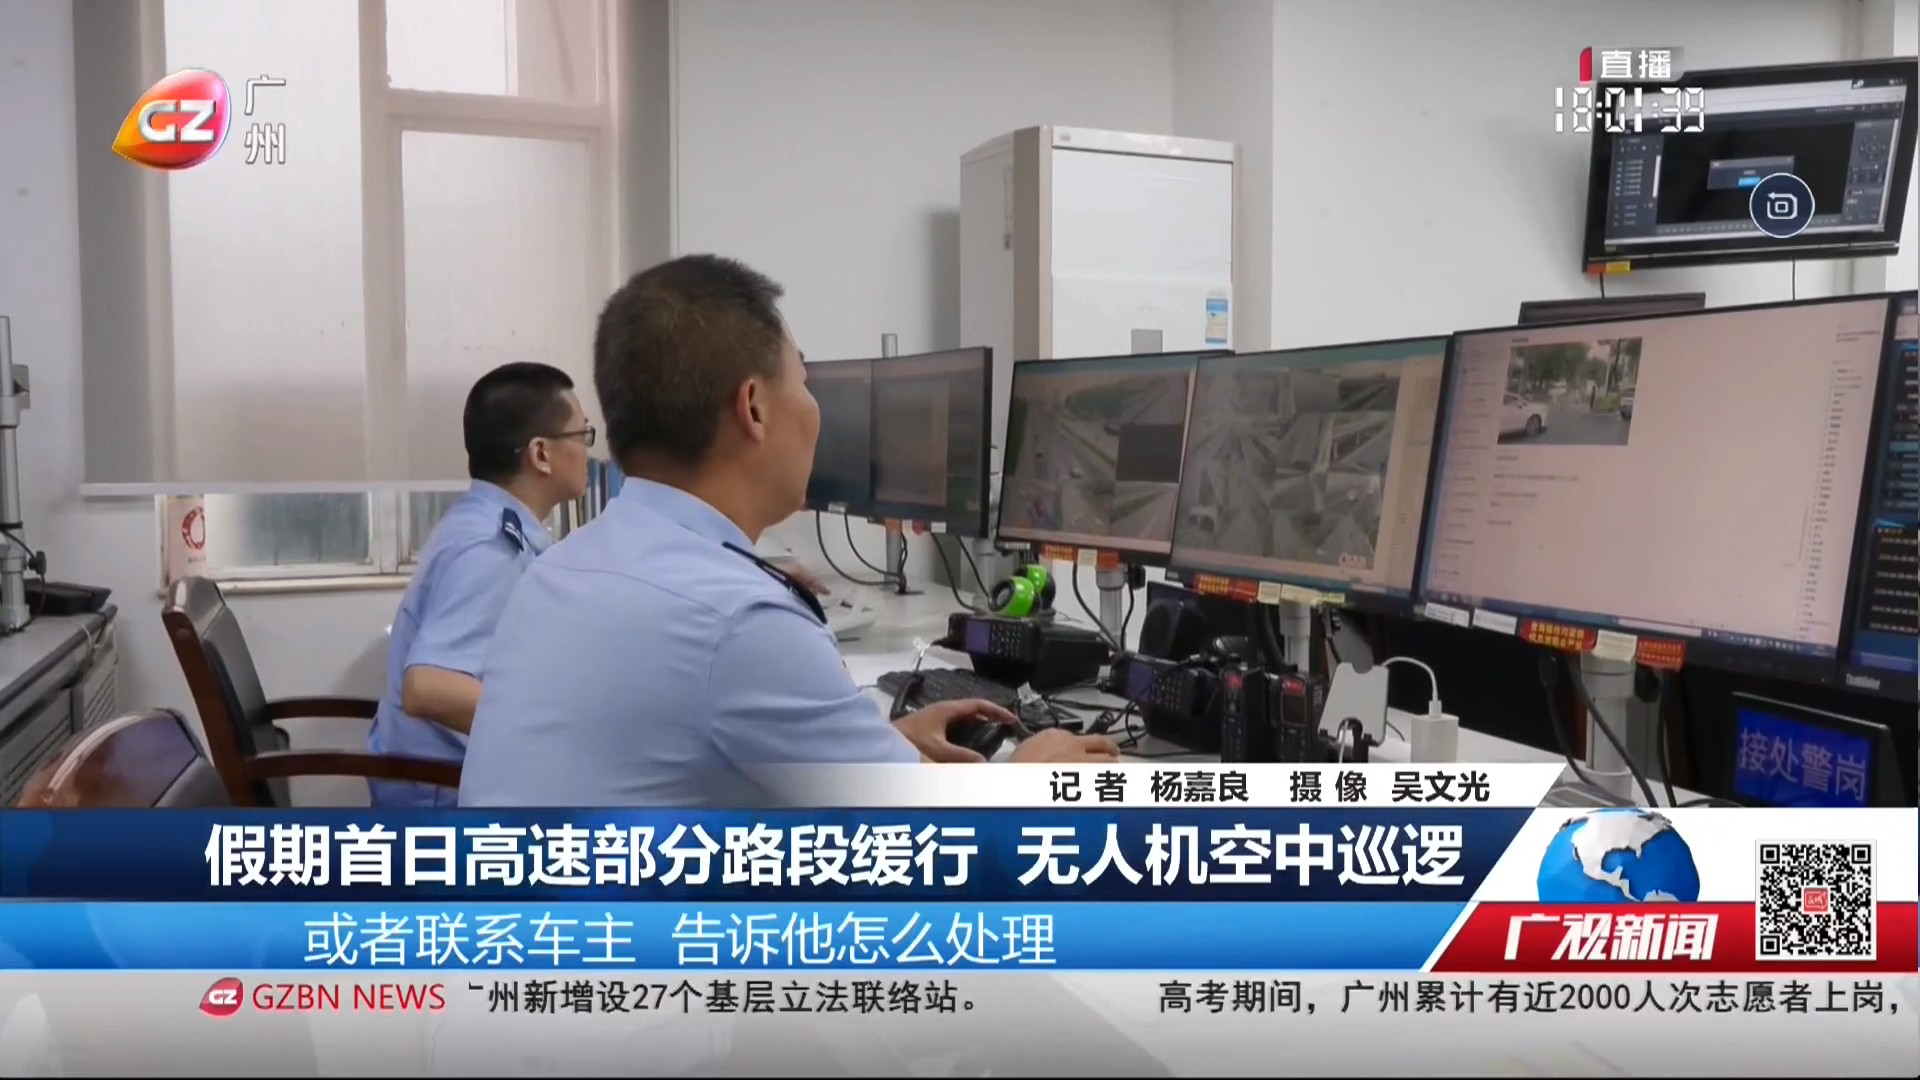 广州台综合频道 广视新闻 假期首日高速部分路段缓行 无人机空中巡逻